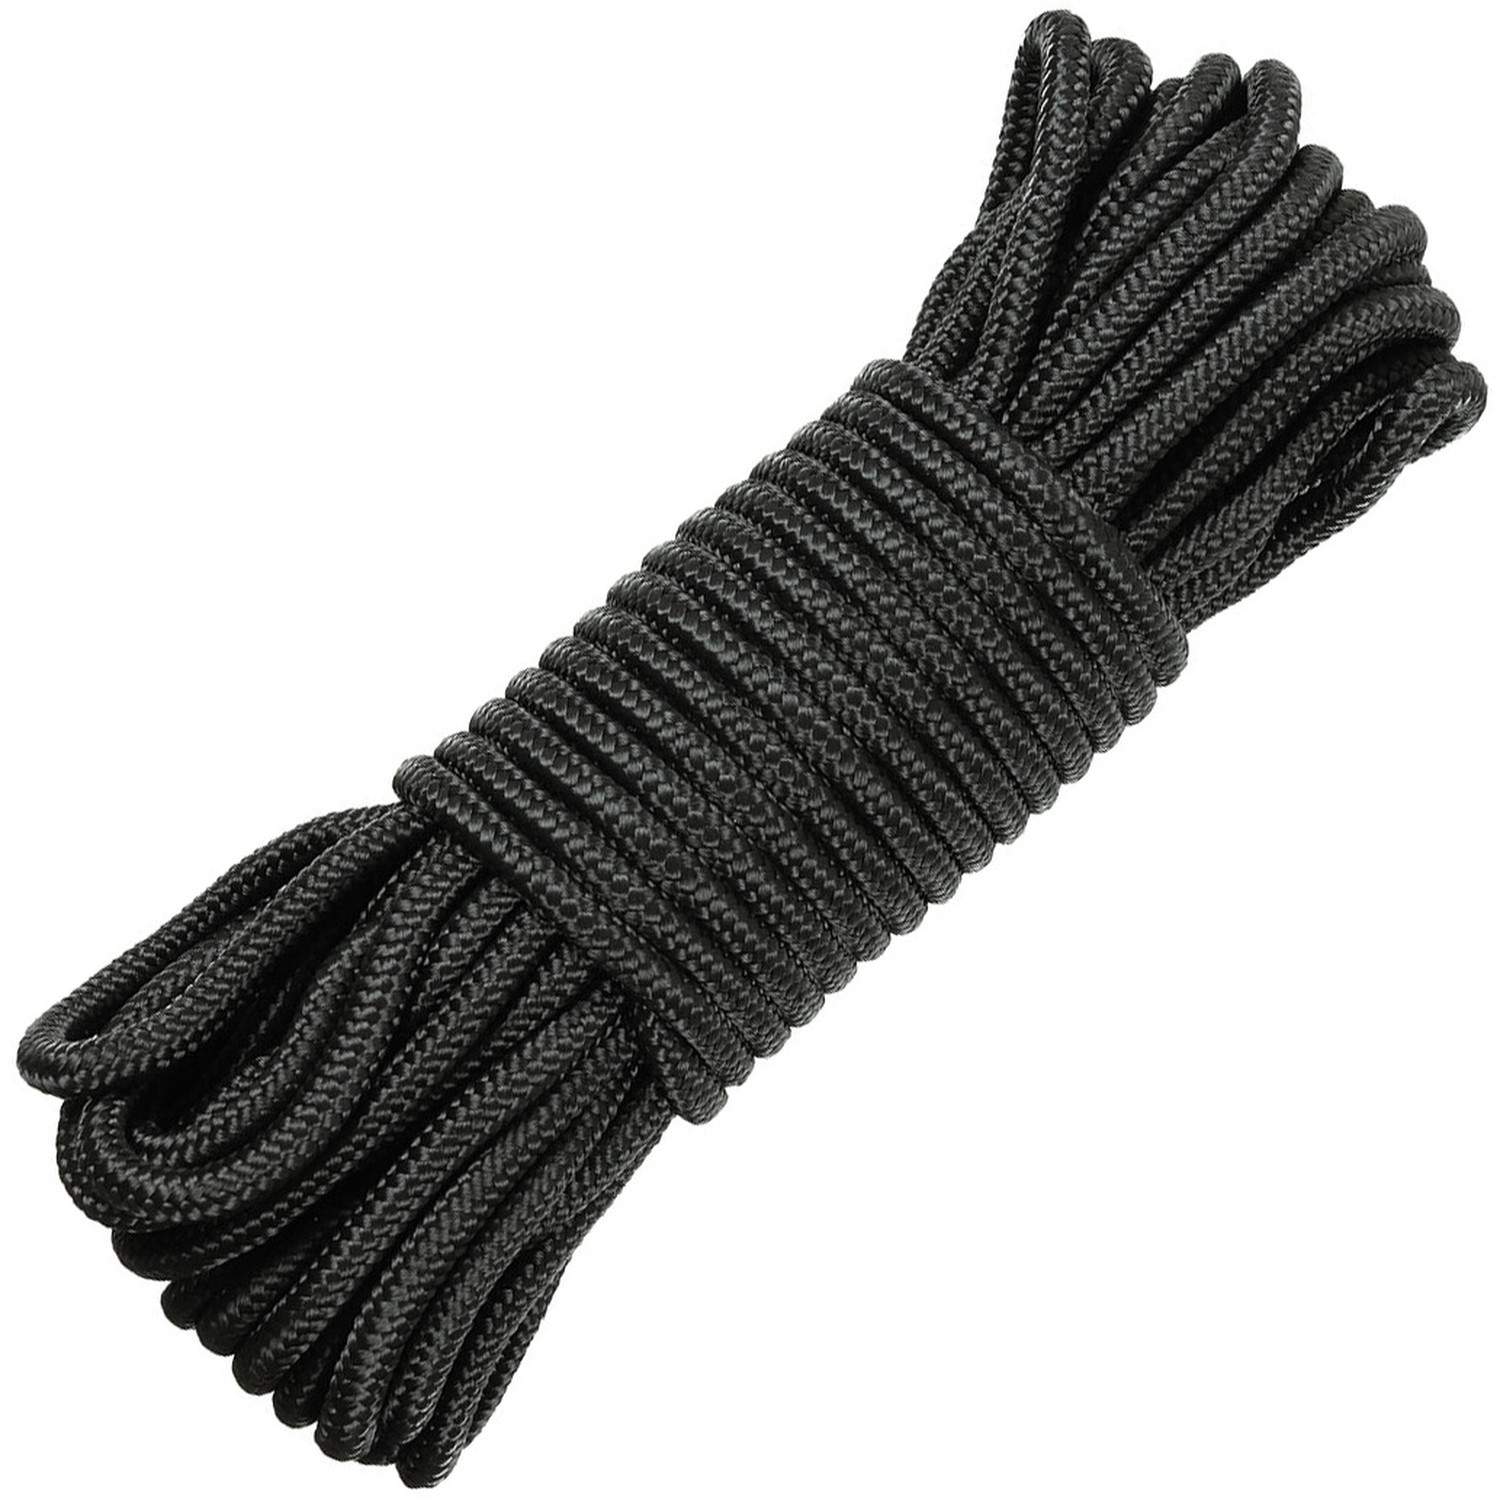 Seil in Schwarz mit Durchmesser 5 mm, 15 m lang